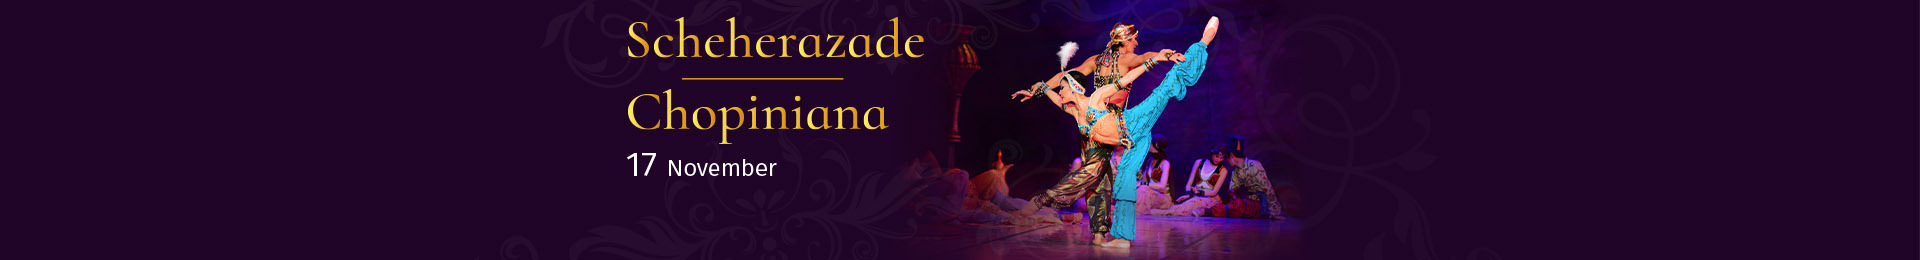 Scheherazade & Chopiniana banner image